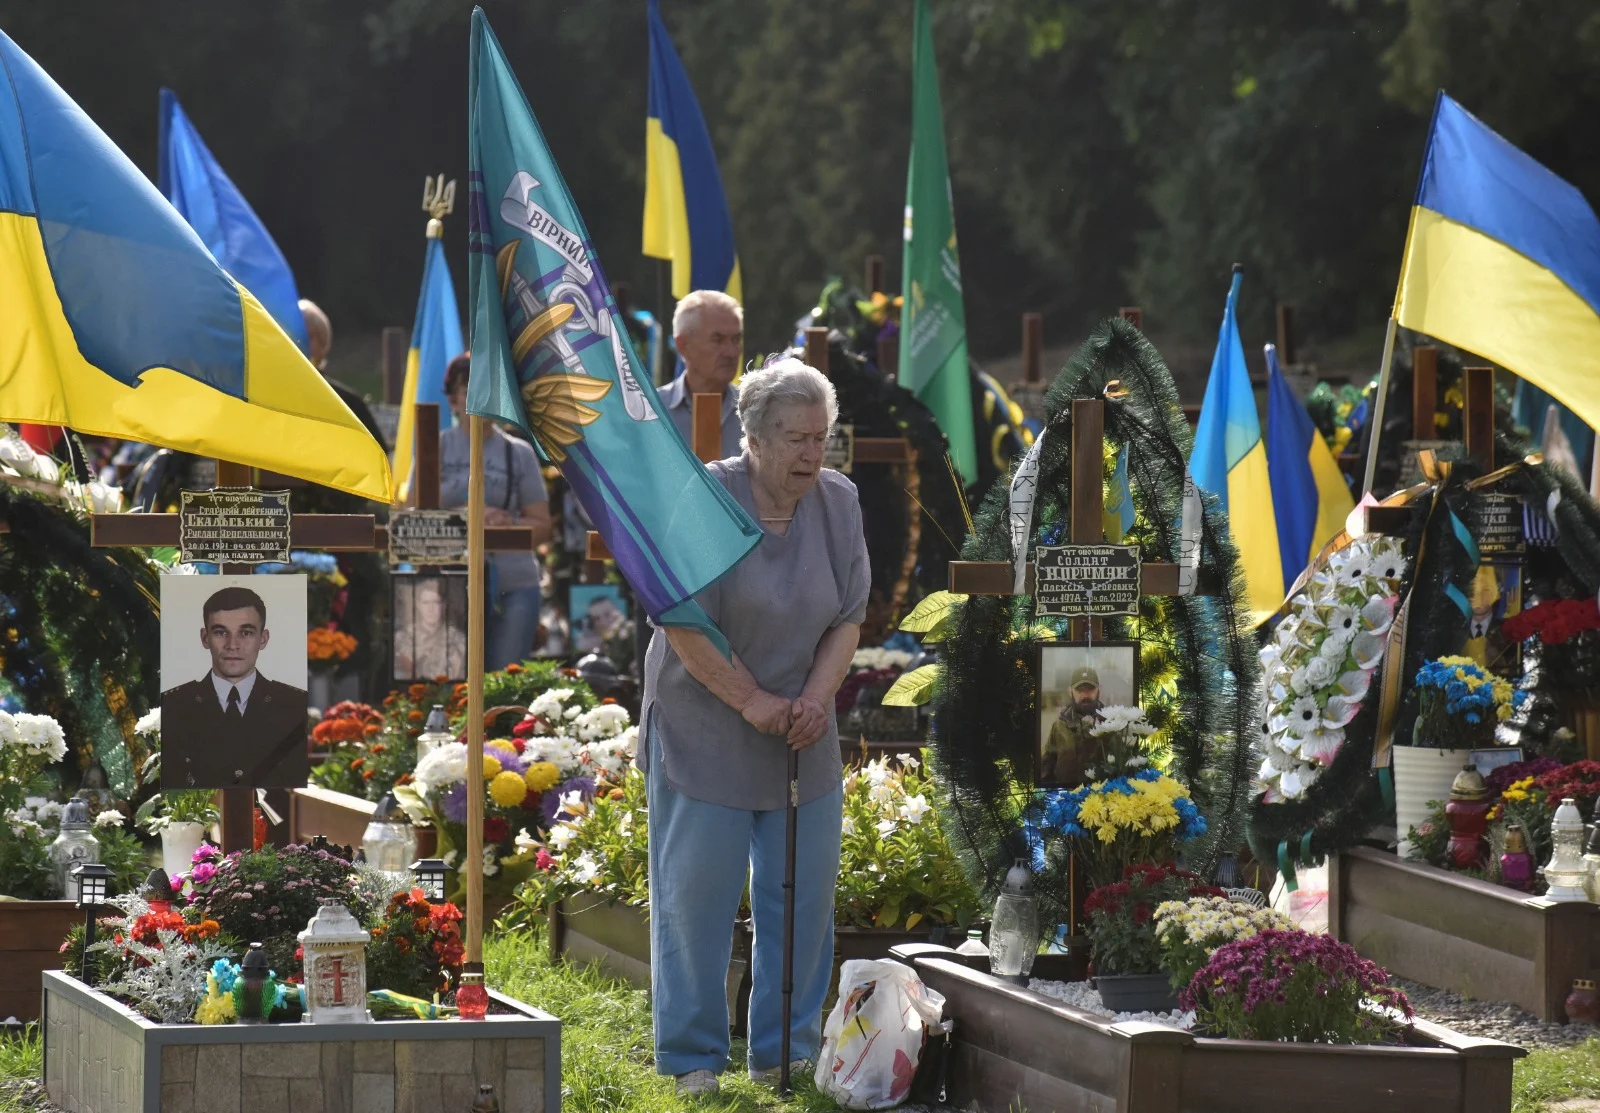 אישה מבוגרת פוקדת את קברו של קרוב משפחה שלה שנהרג במלחמה באוקראינה בעיר לביב